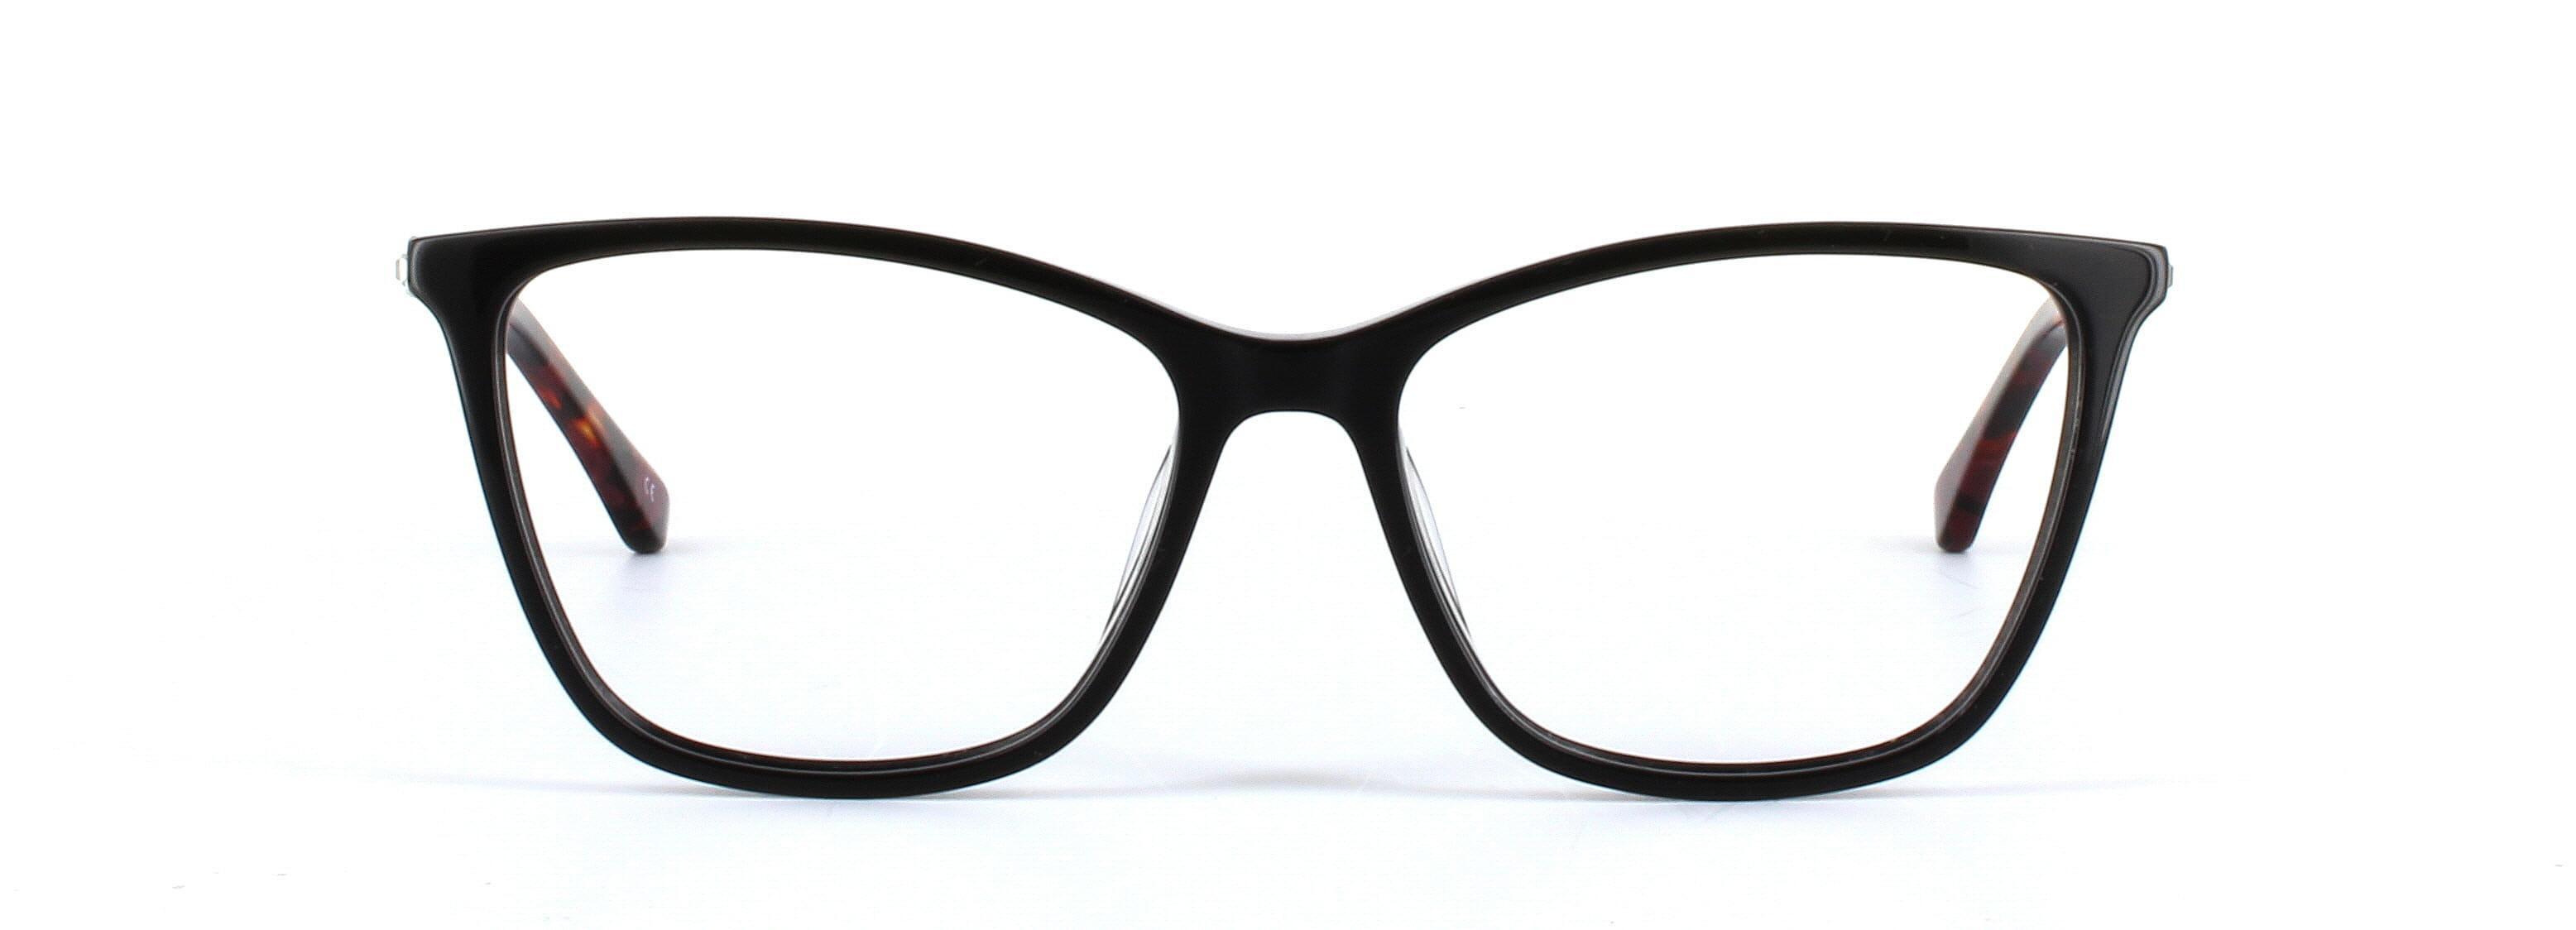 Gloria Black Full Rim Cat Eye Acetate Glasses - Image View 5